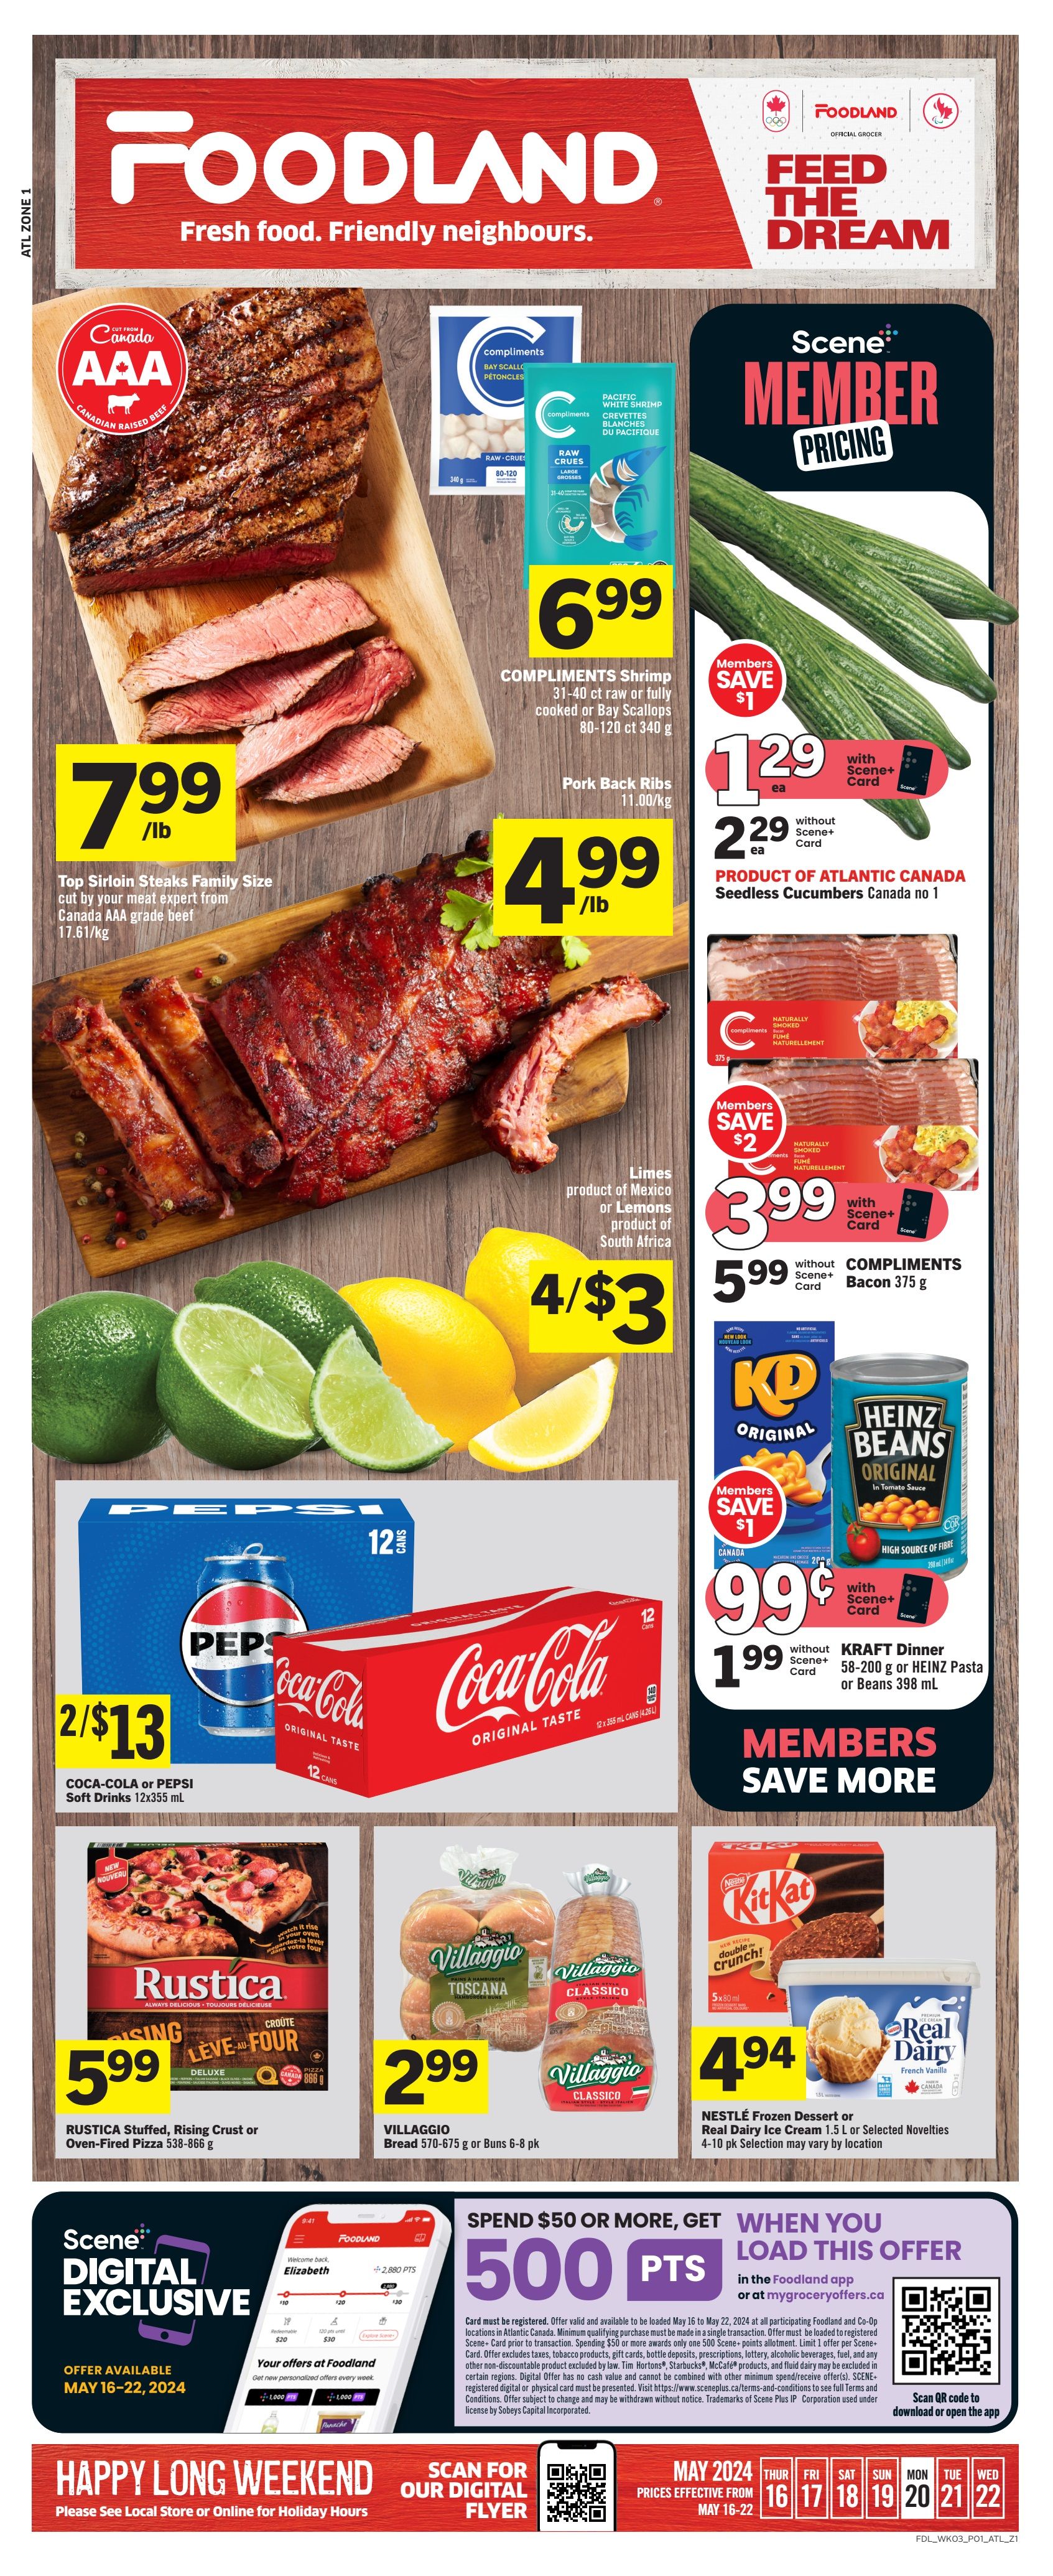 Foodland - Atlantic Canada - Weekly Flyer Specials